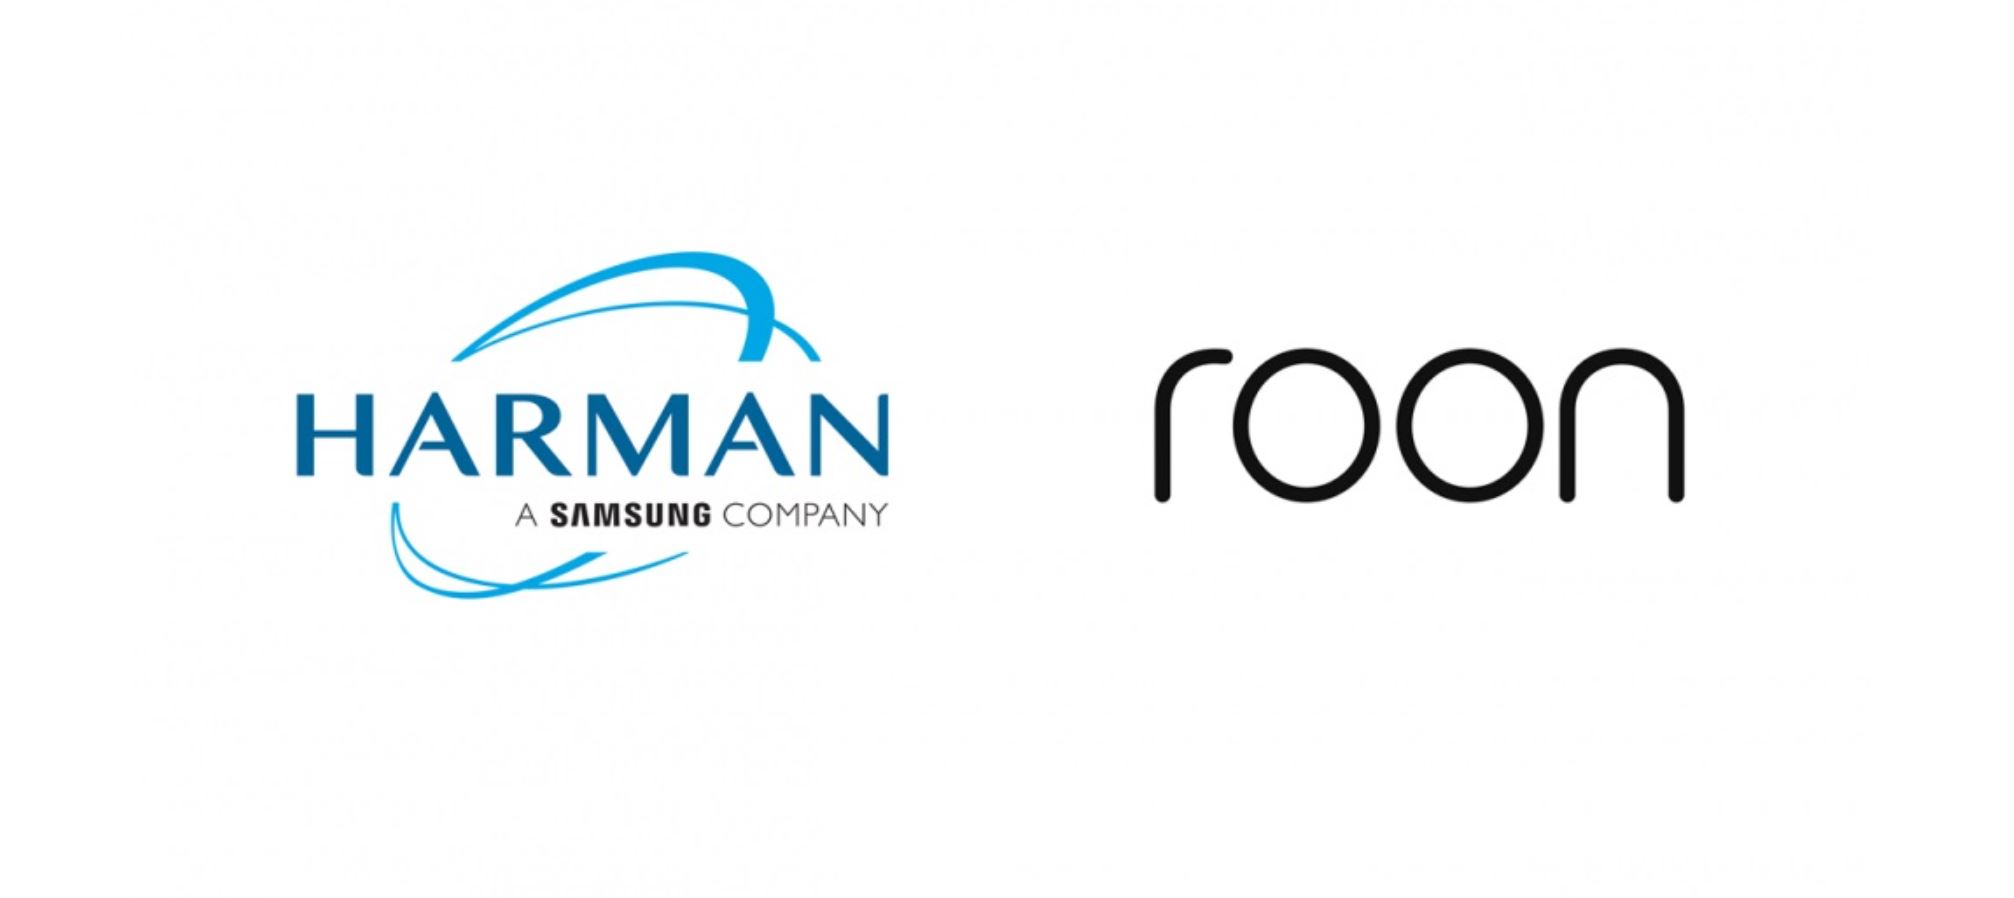 Harman đã hoàn tất mua lại công ty Roon